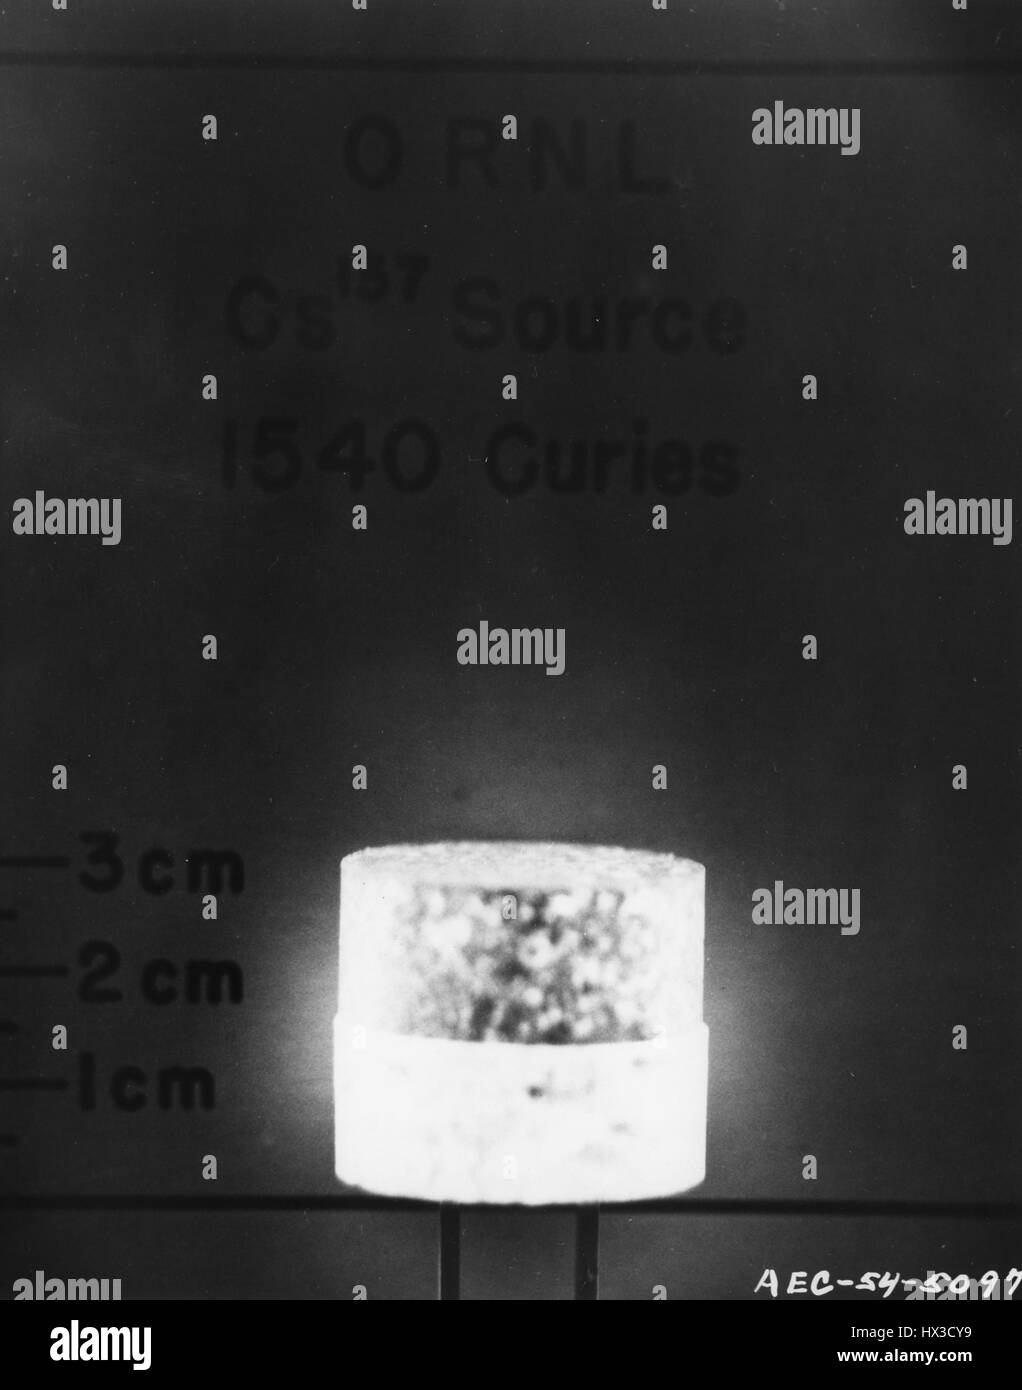 Fotografia scattata al Oak Ridge National Laboratory per uso nel trattamento di cancro, Knoxville, Tennessee, 1954. Immagine cortesia del Dipartimento Americano di Energia. Foto Stock